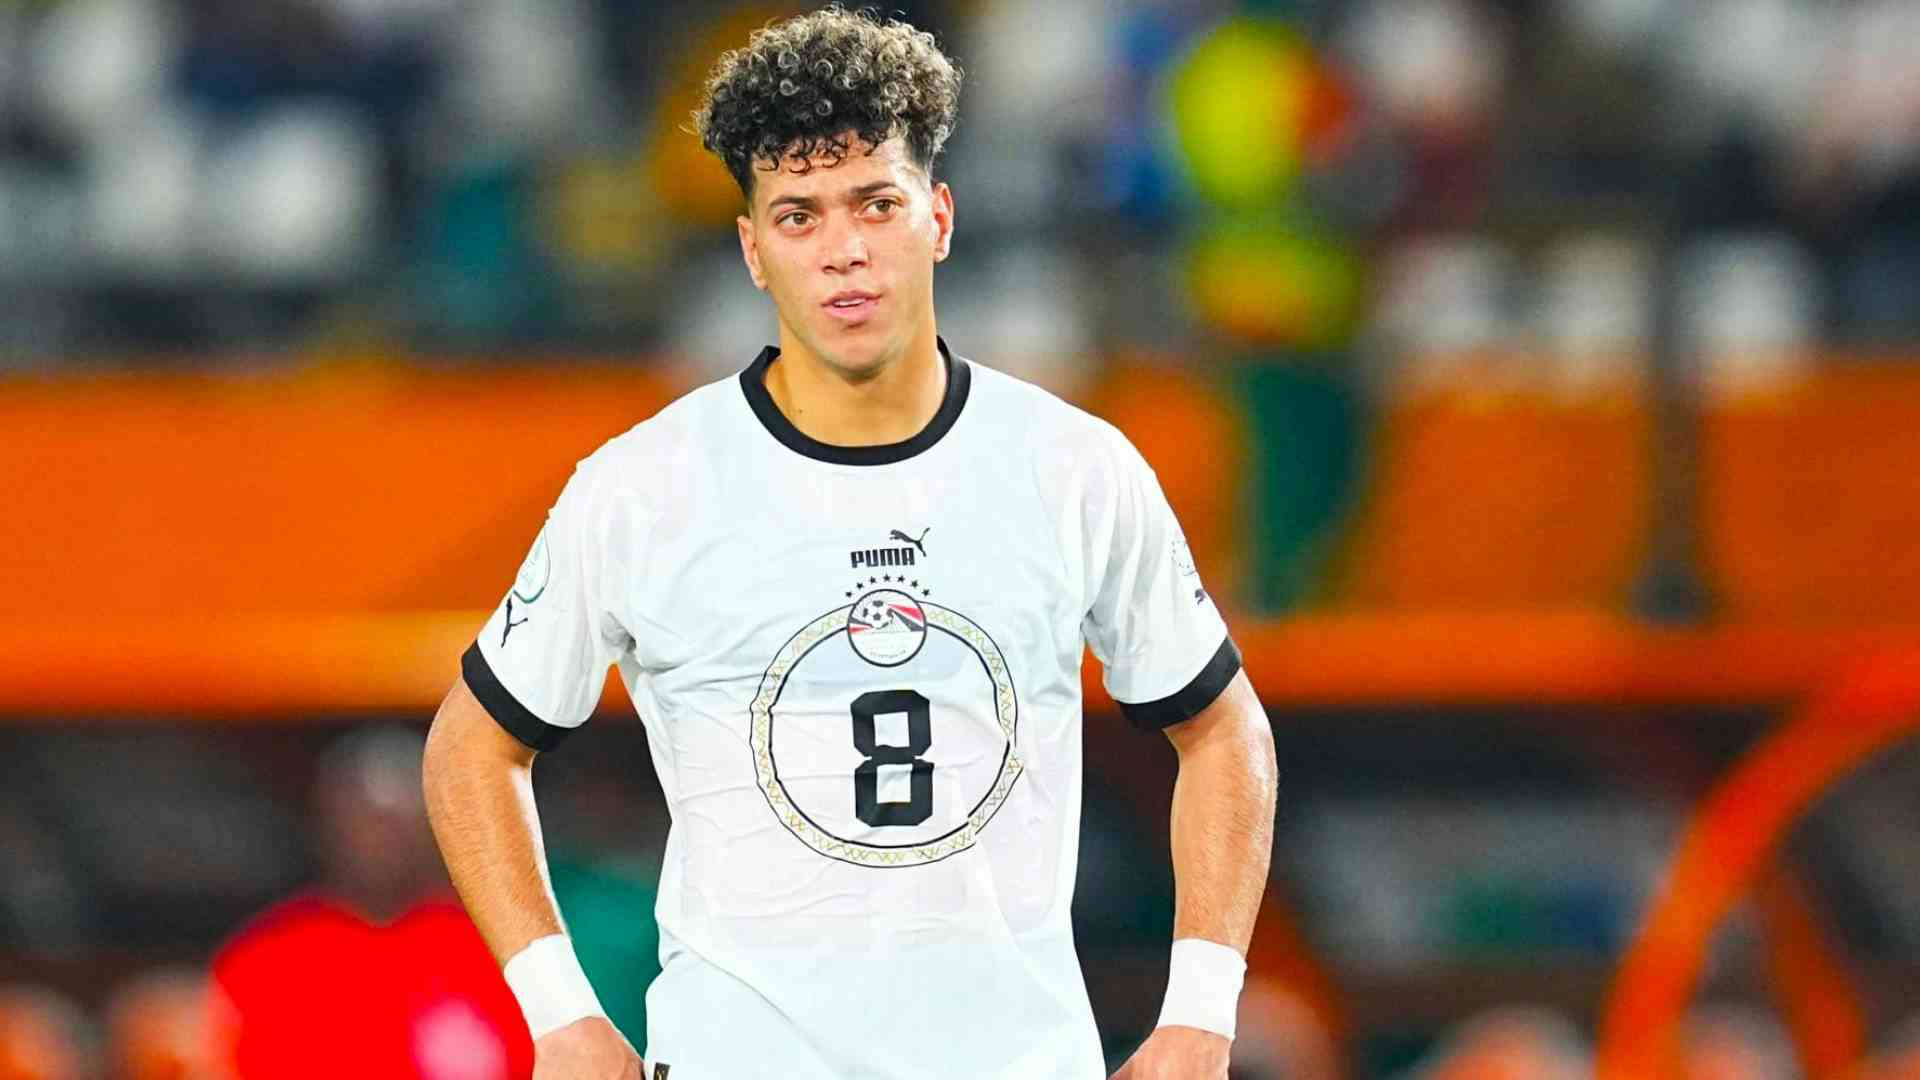 Shock in Coppa d'Africa: Ashour, follia in allenamento. Trasportato d'urgenza in ospedale